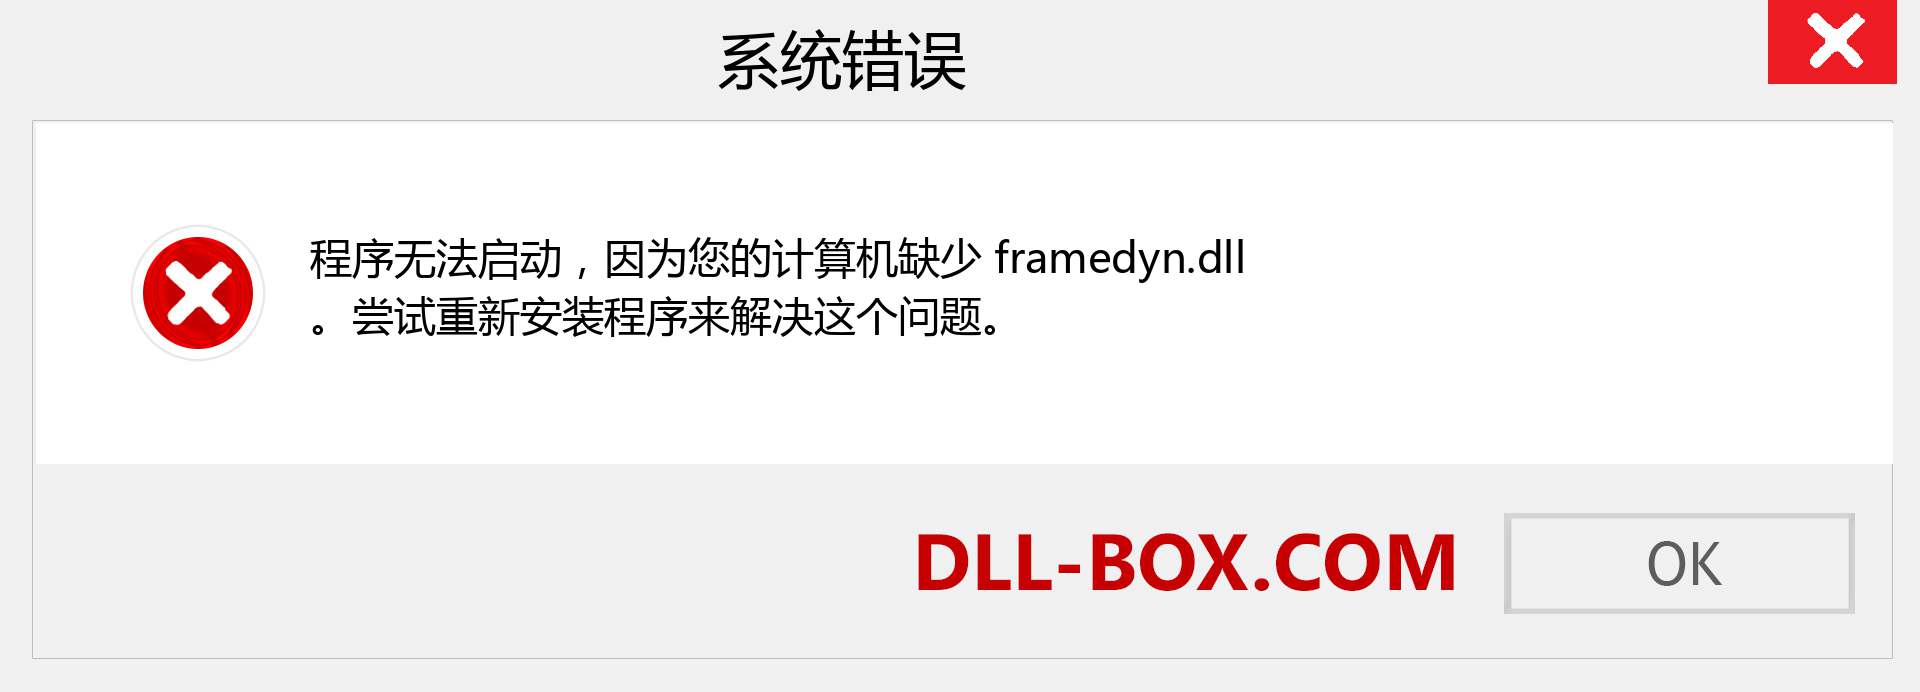 framedyn.dll 文件丢失？。 适用于 Windows 7、8、10 的下载 - 修复 Windows、照片、图像上的 framedyn dll 丢失错误